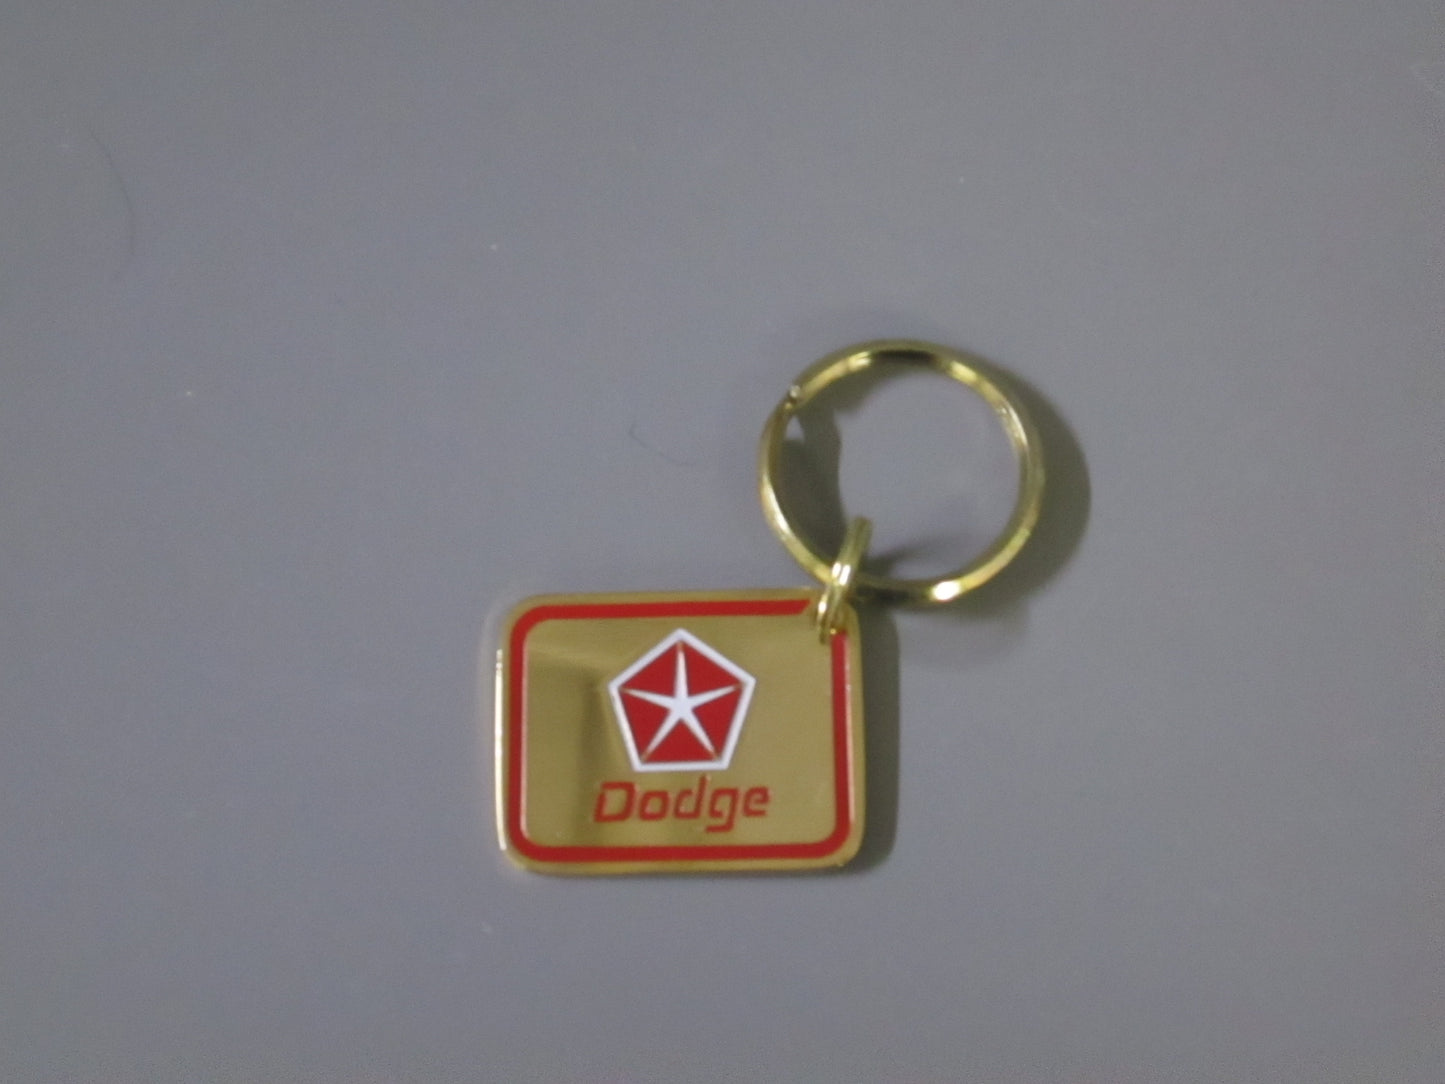 Brass Key Tag with Dodge Logo